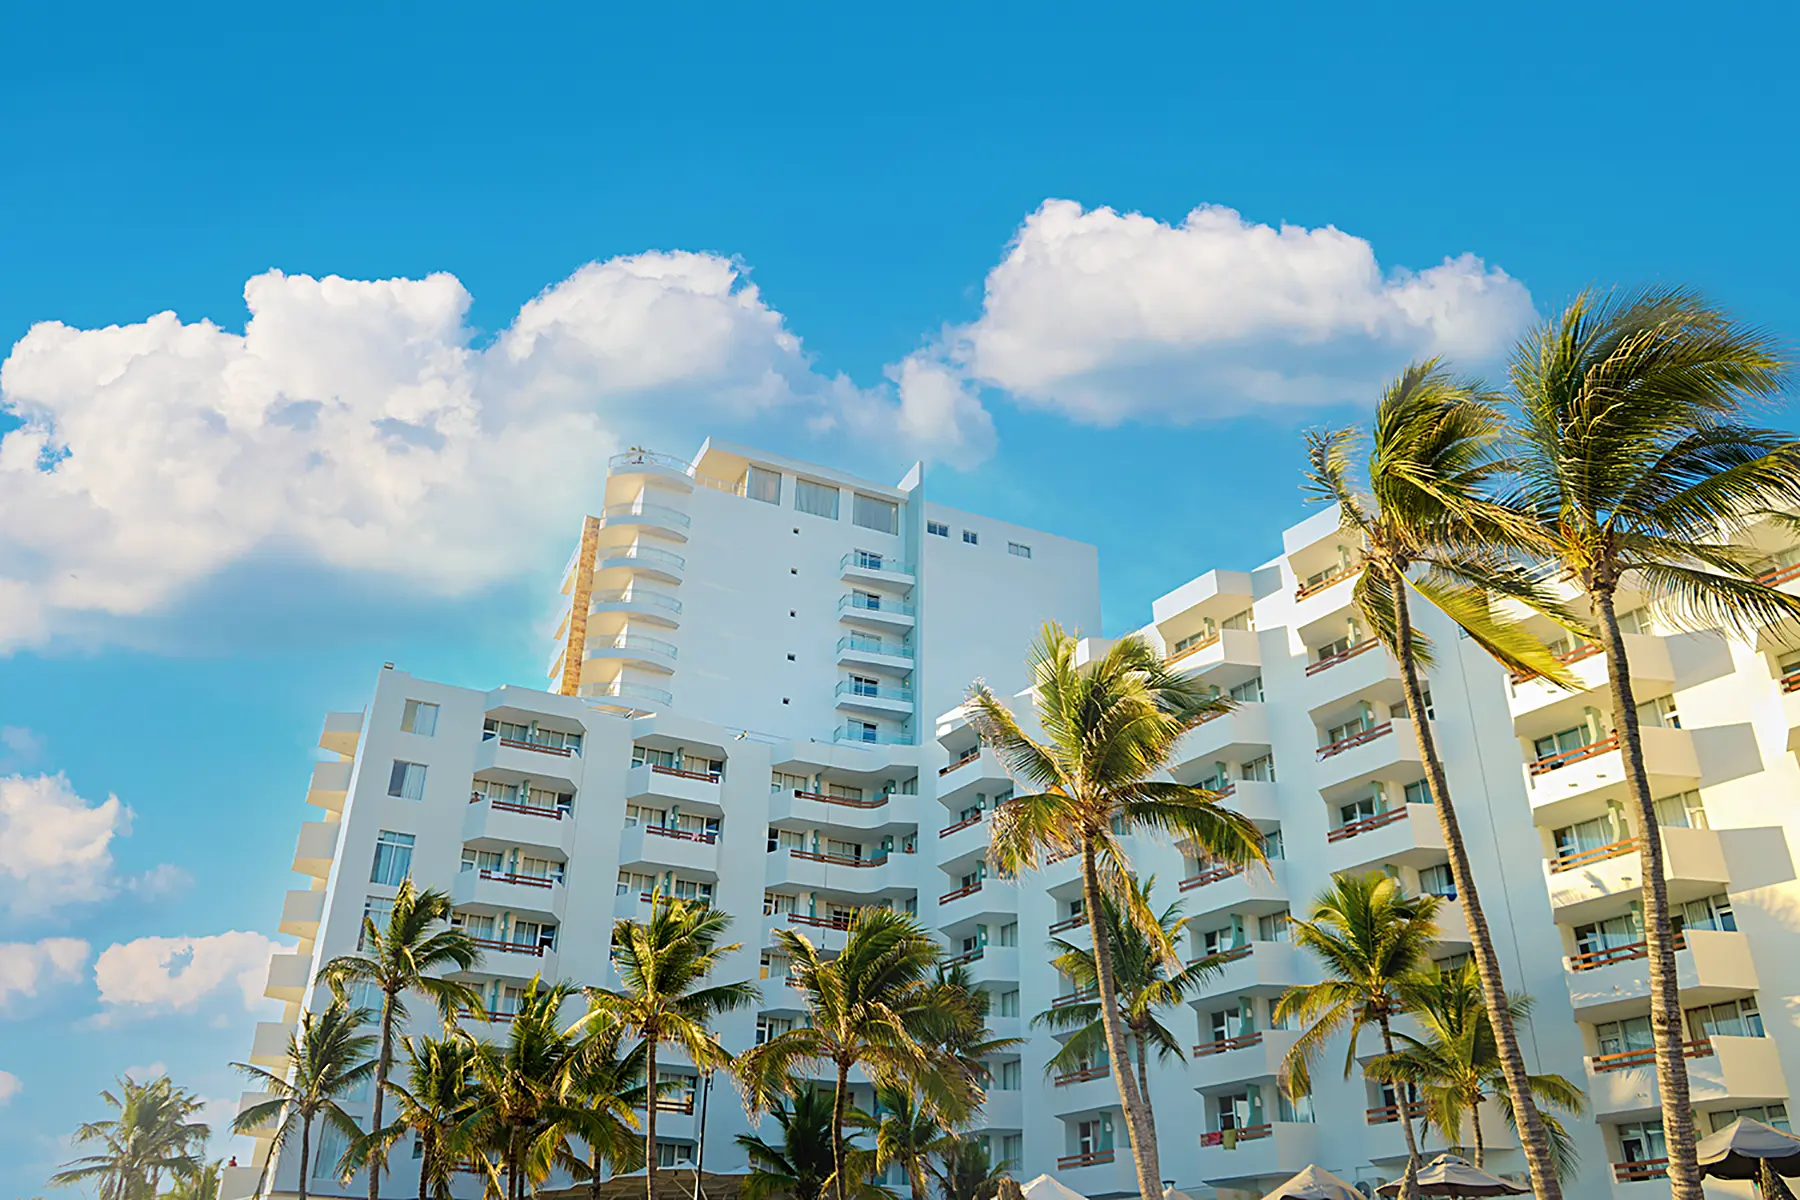 Fachada de hotel Oceano Palace con habitaciones vista al mar y palmeras en Mazatlán